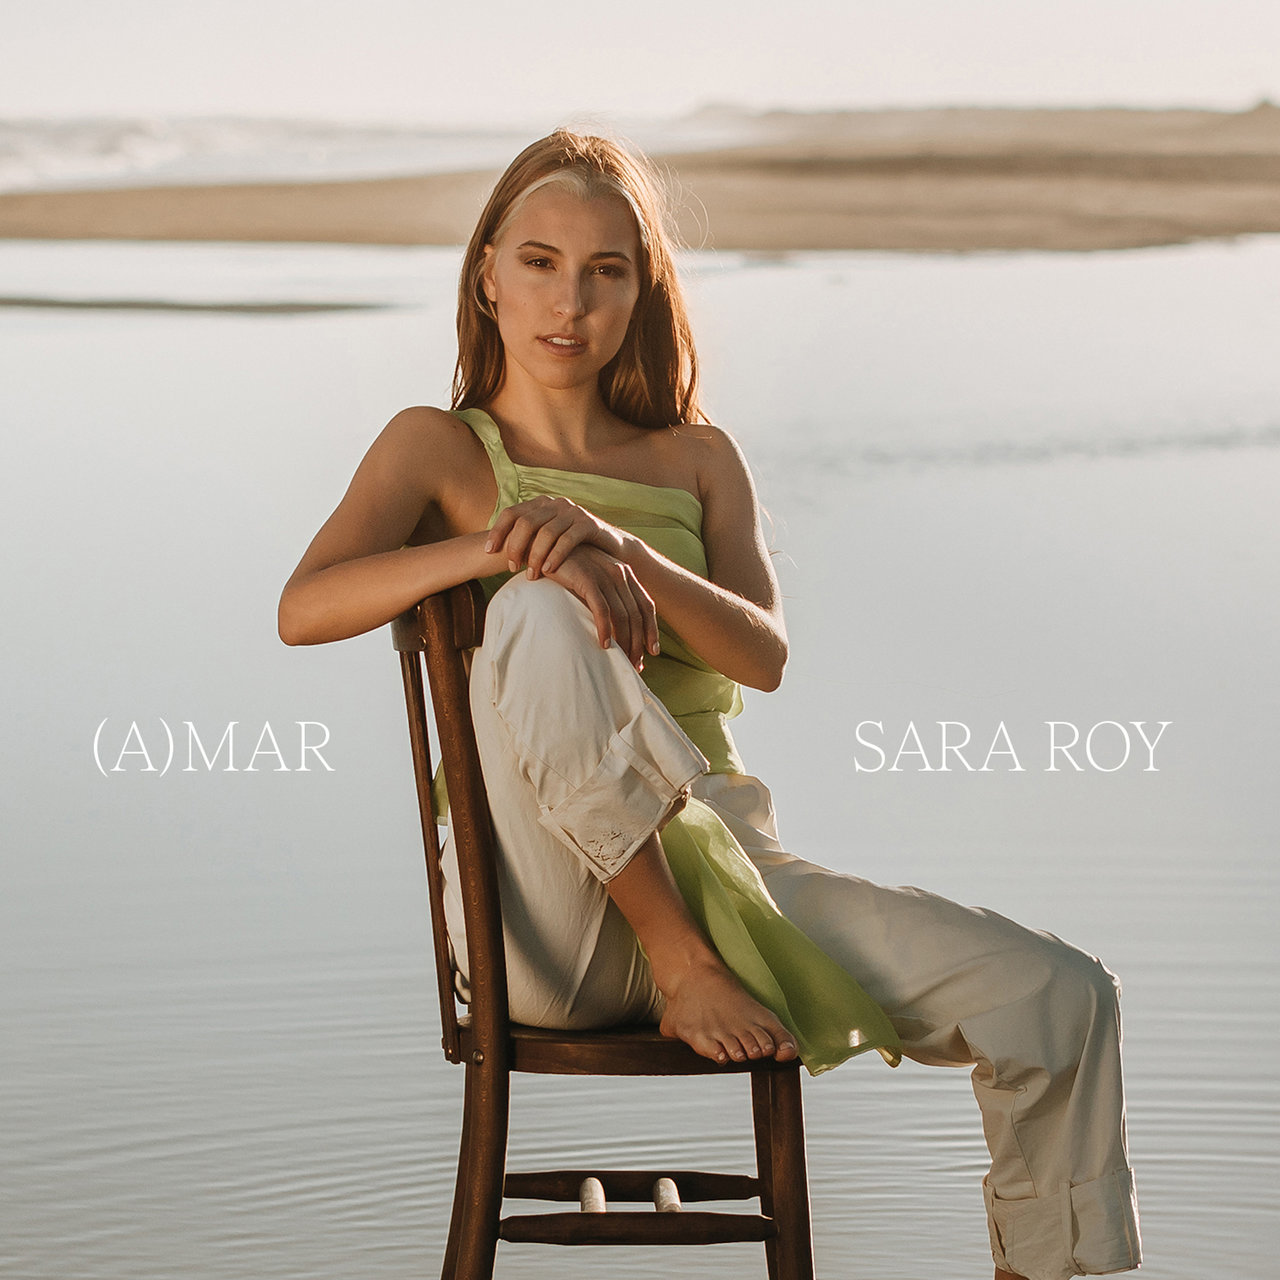 Sara Roy — (A)MAR cover artwork